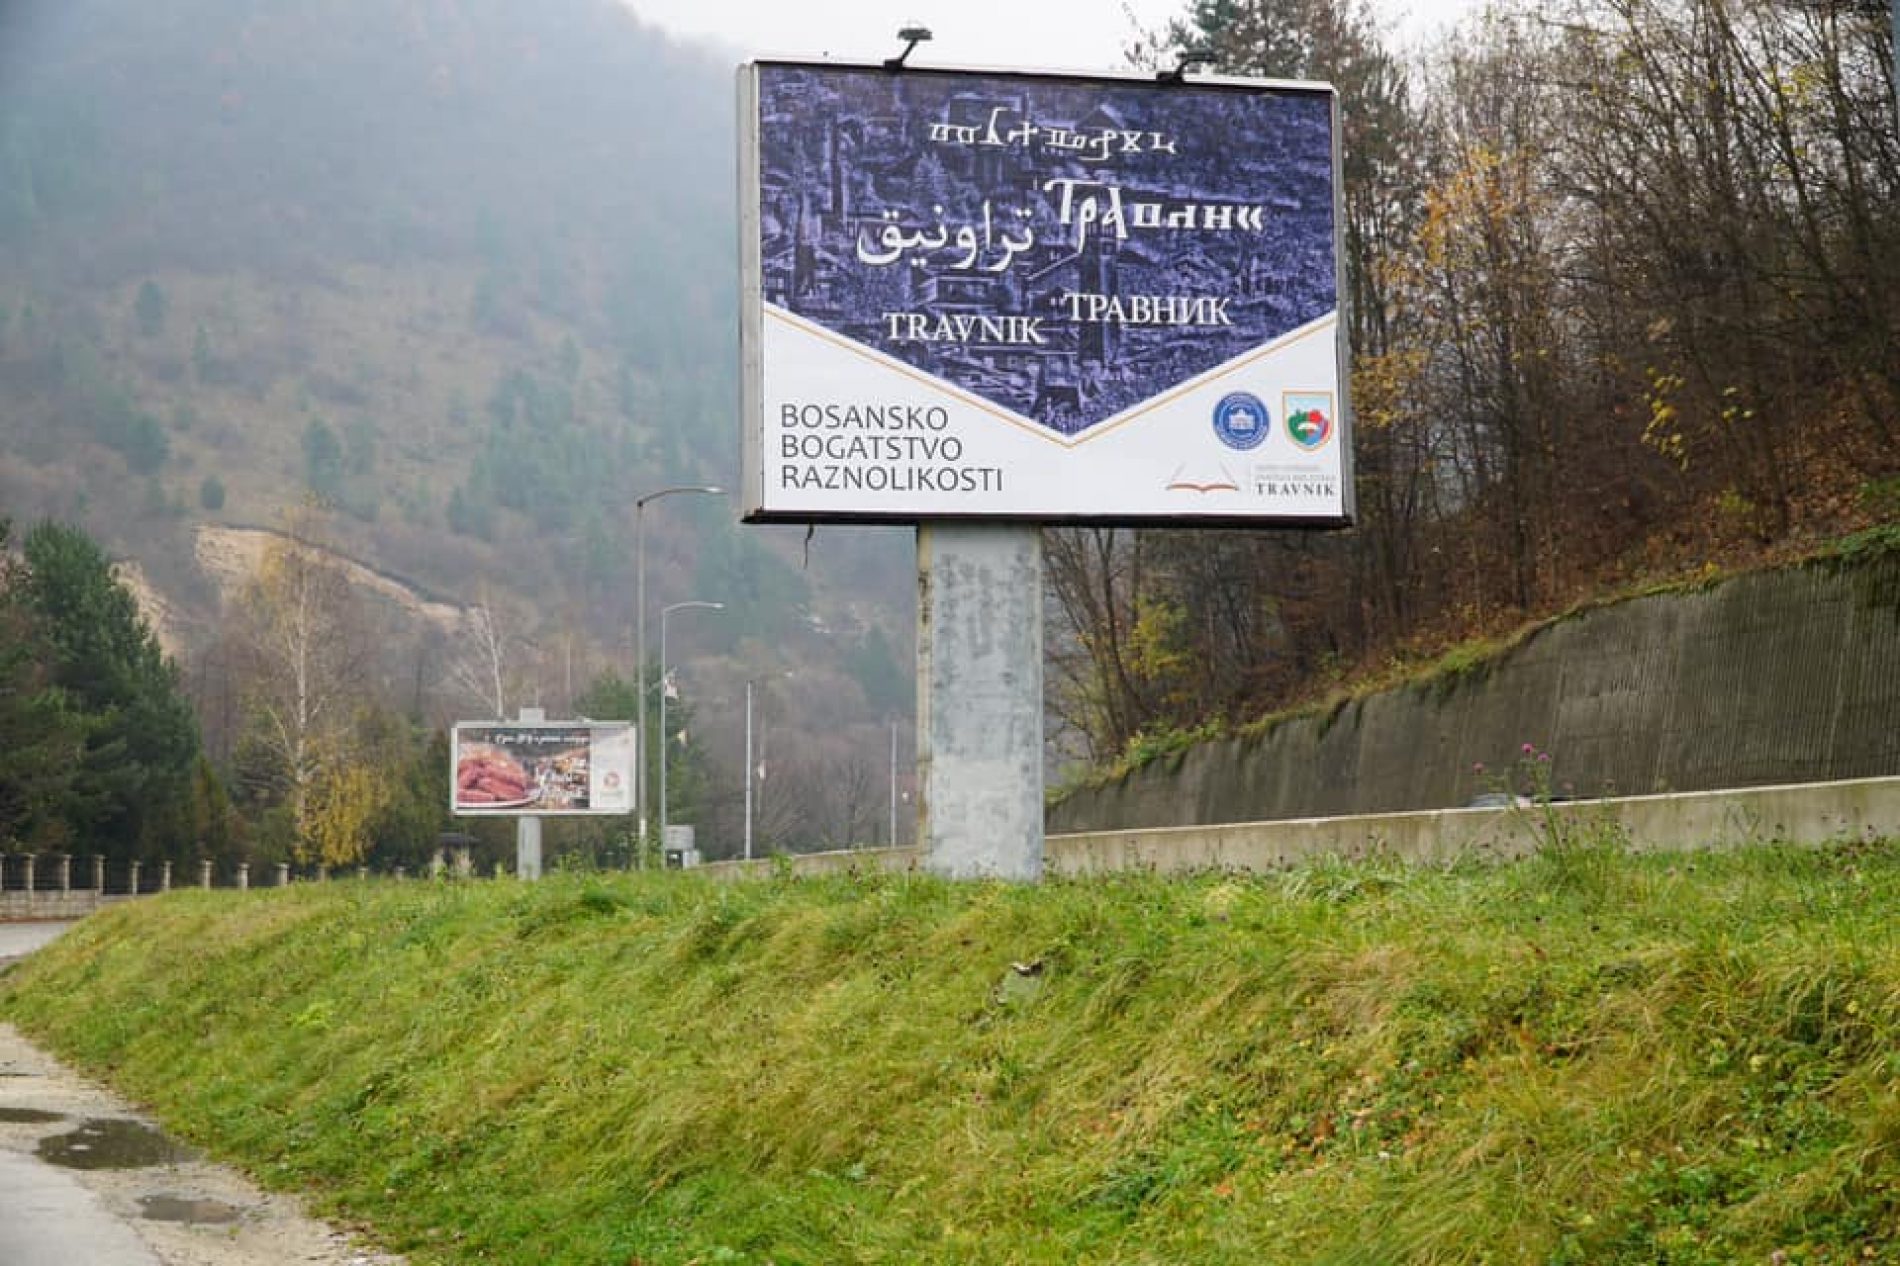 U Travniku postavljeni bilbordi sa nazivom grada na pet bosanskih pisama